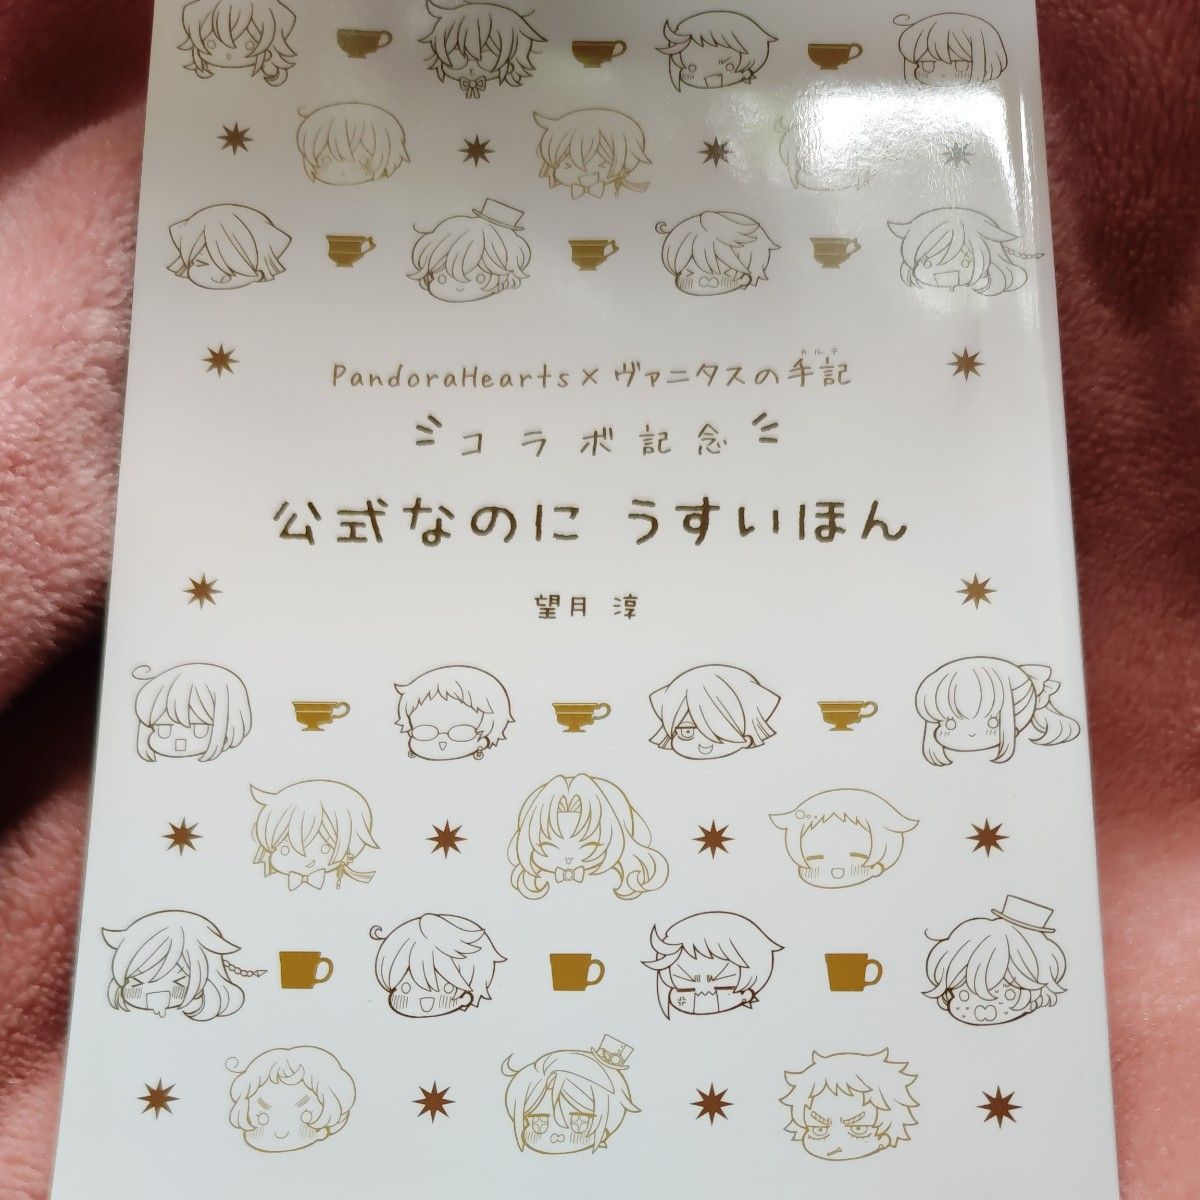 Pandorahearts × ヴァニタスの手記 コラボ記念 公式なのにうすいほん 望月淳